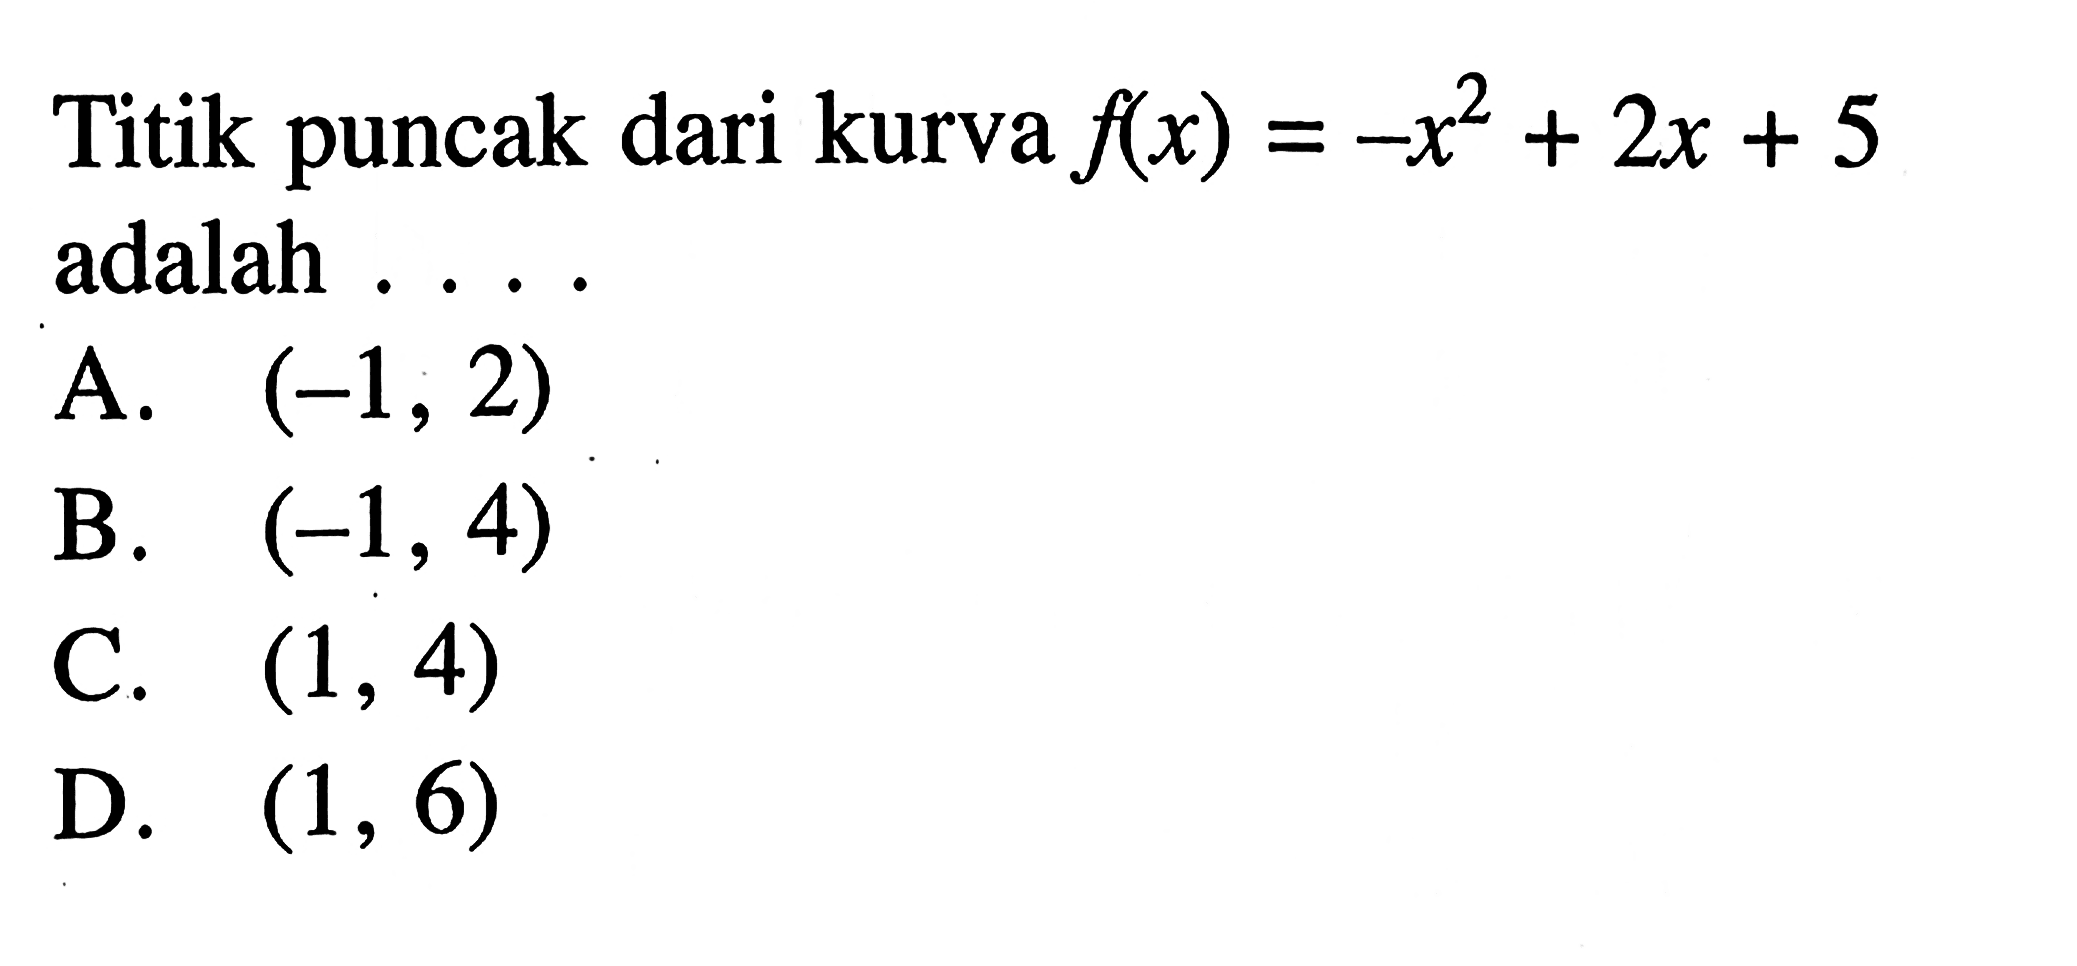 Titik puncak dari kurva f(x)=-x^2+2x+5 adalah ...
 a. (-1,2)
 b. (-1,4)
 c. (1,4)
 d. (1,6)